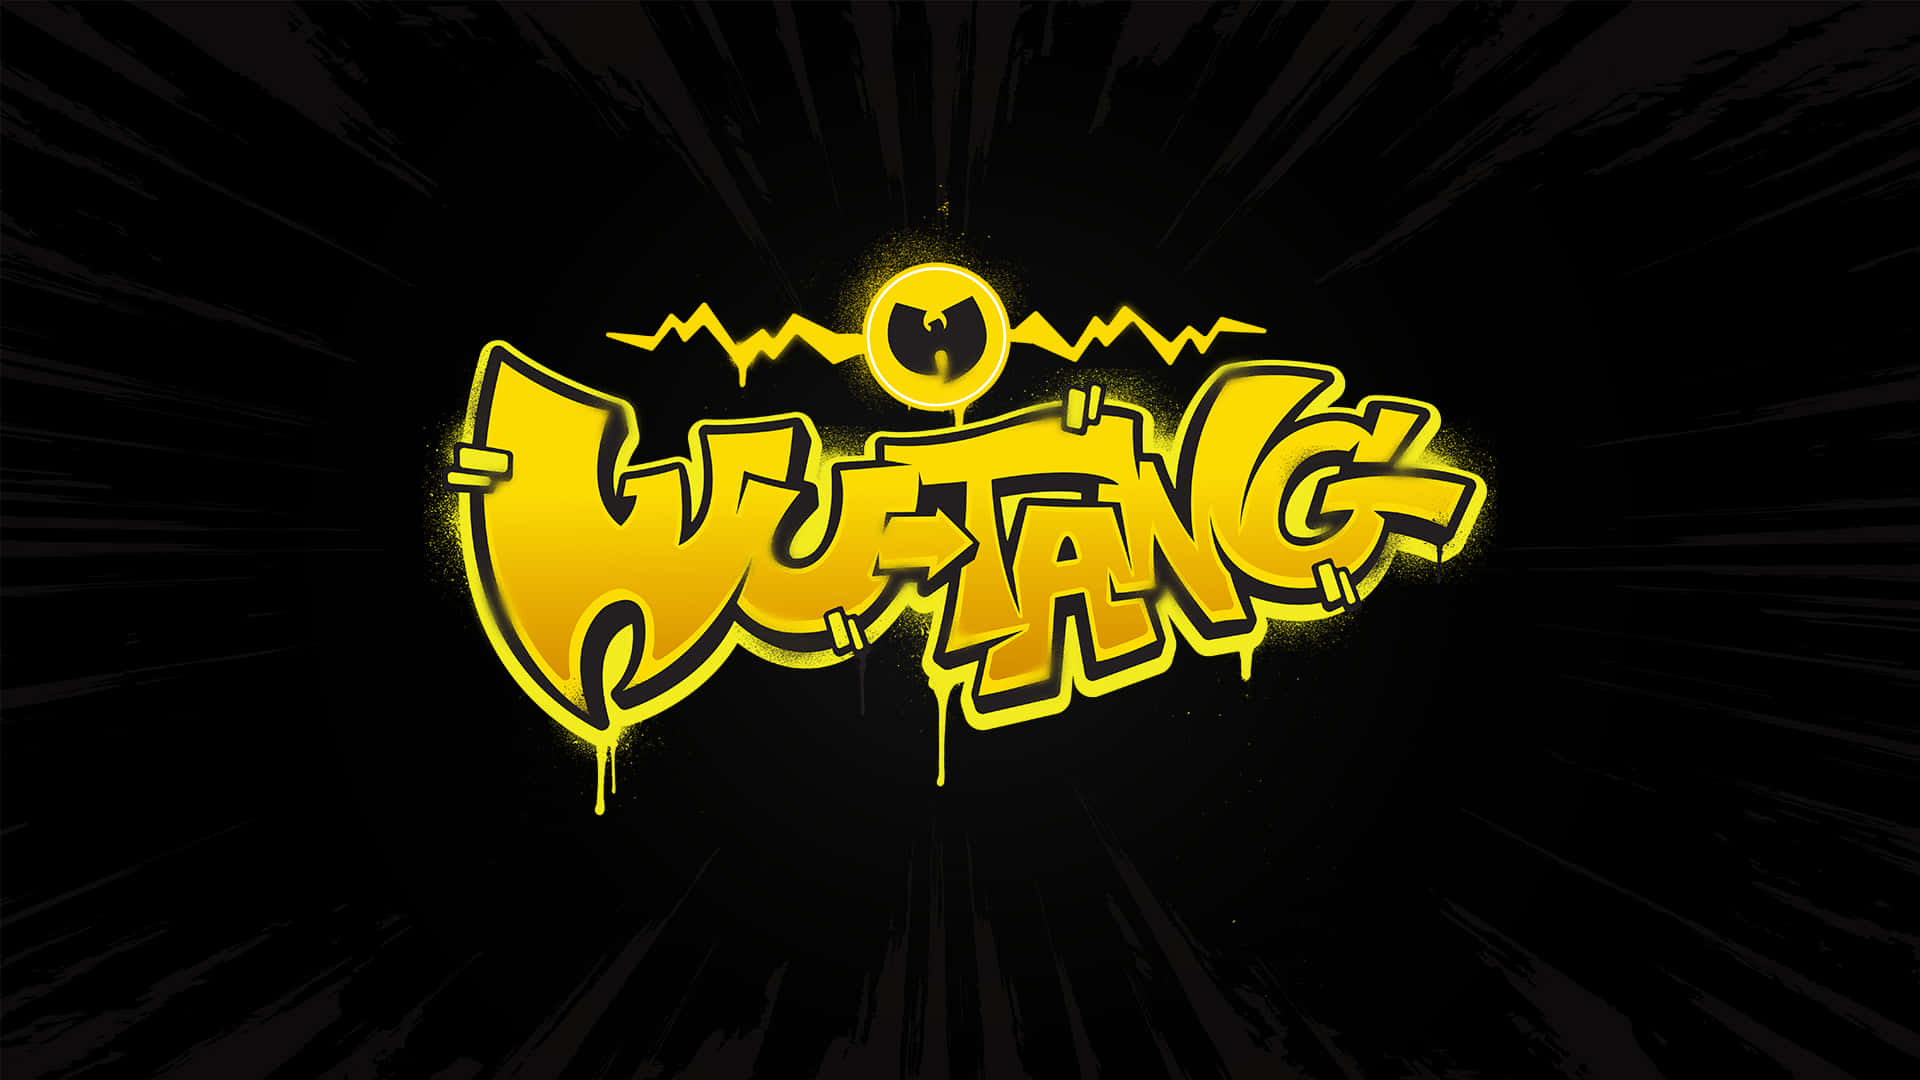 wu tang logo